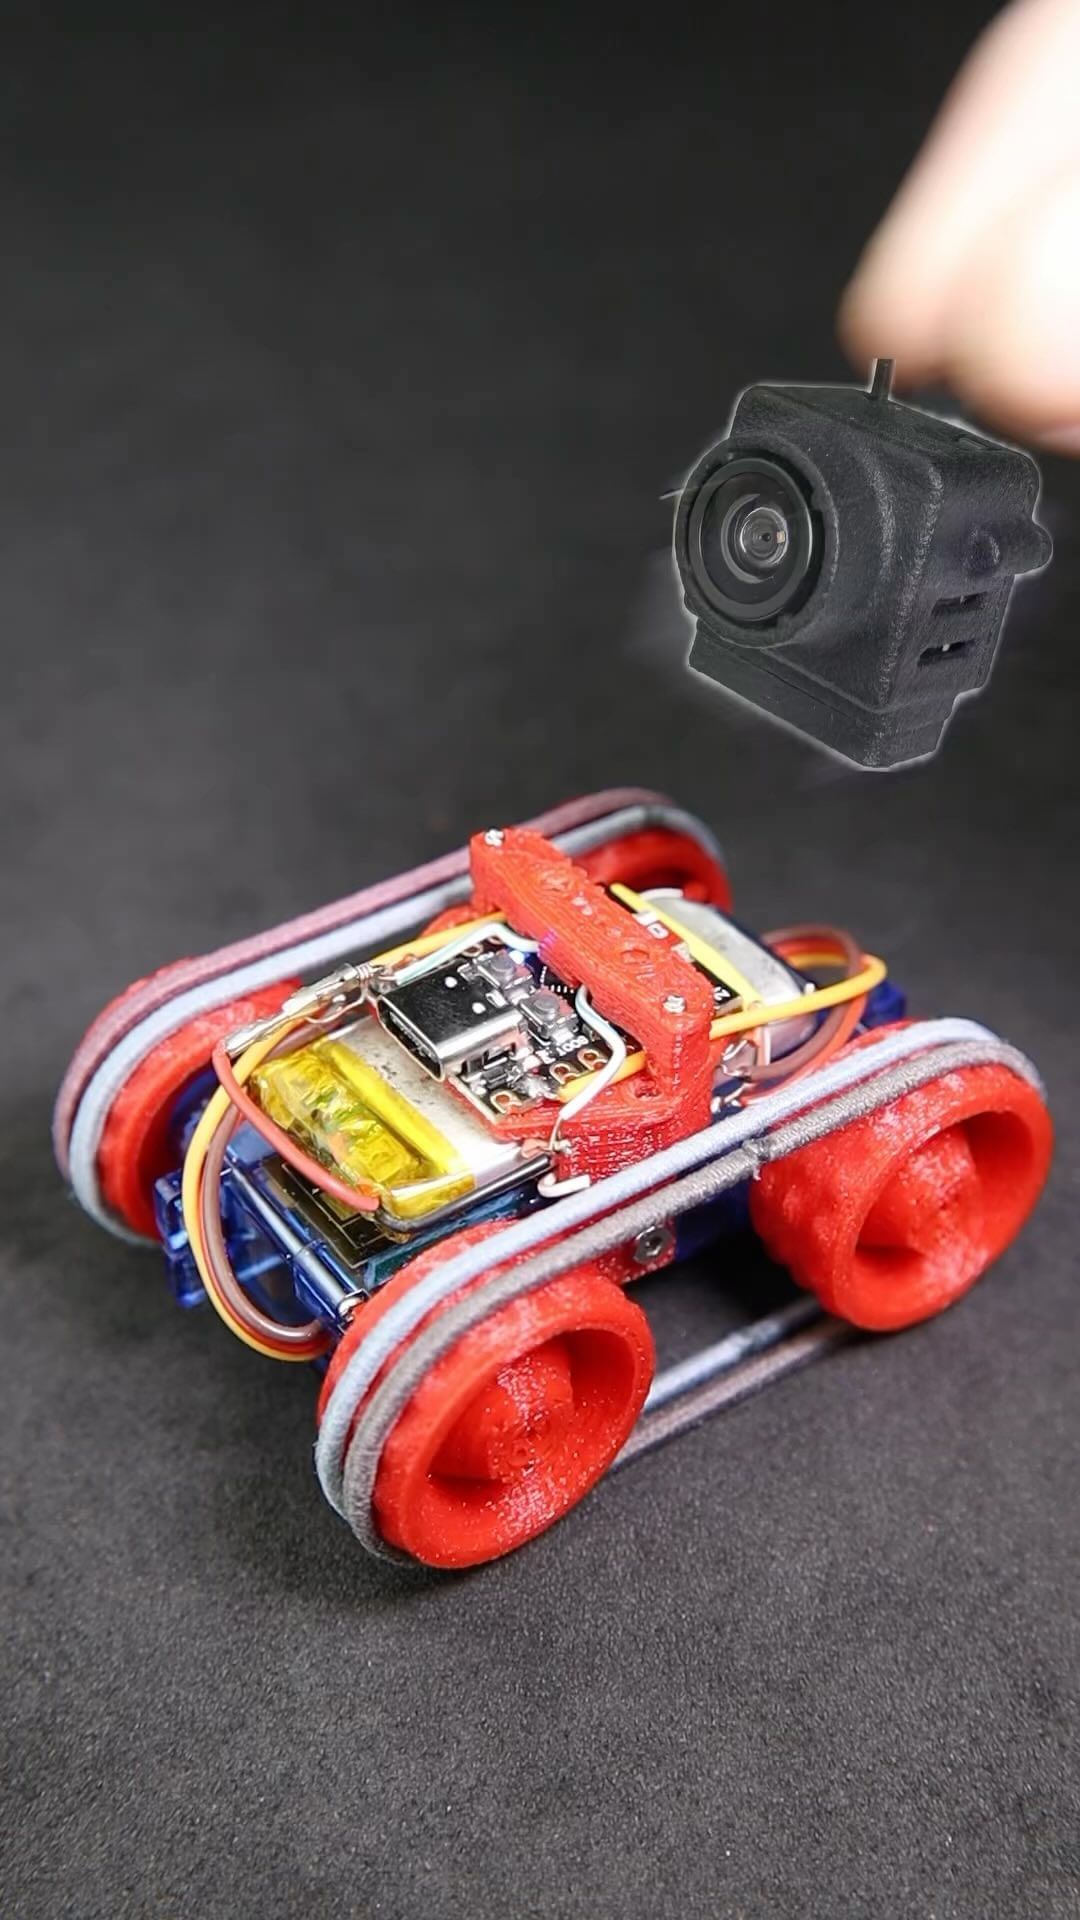 ساخت کاردستی روبات کوچک